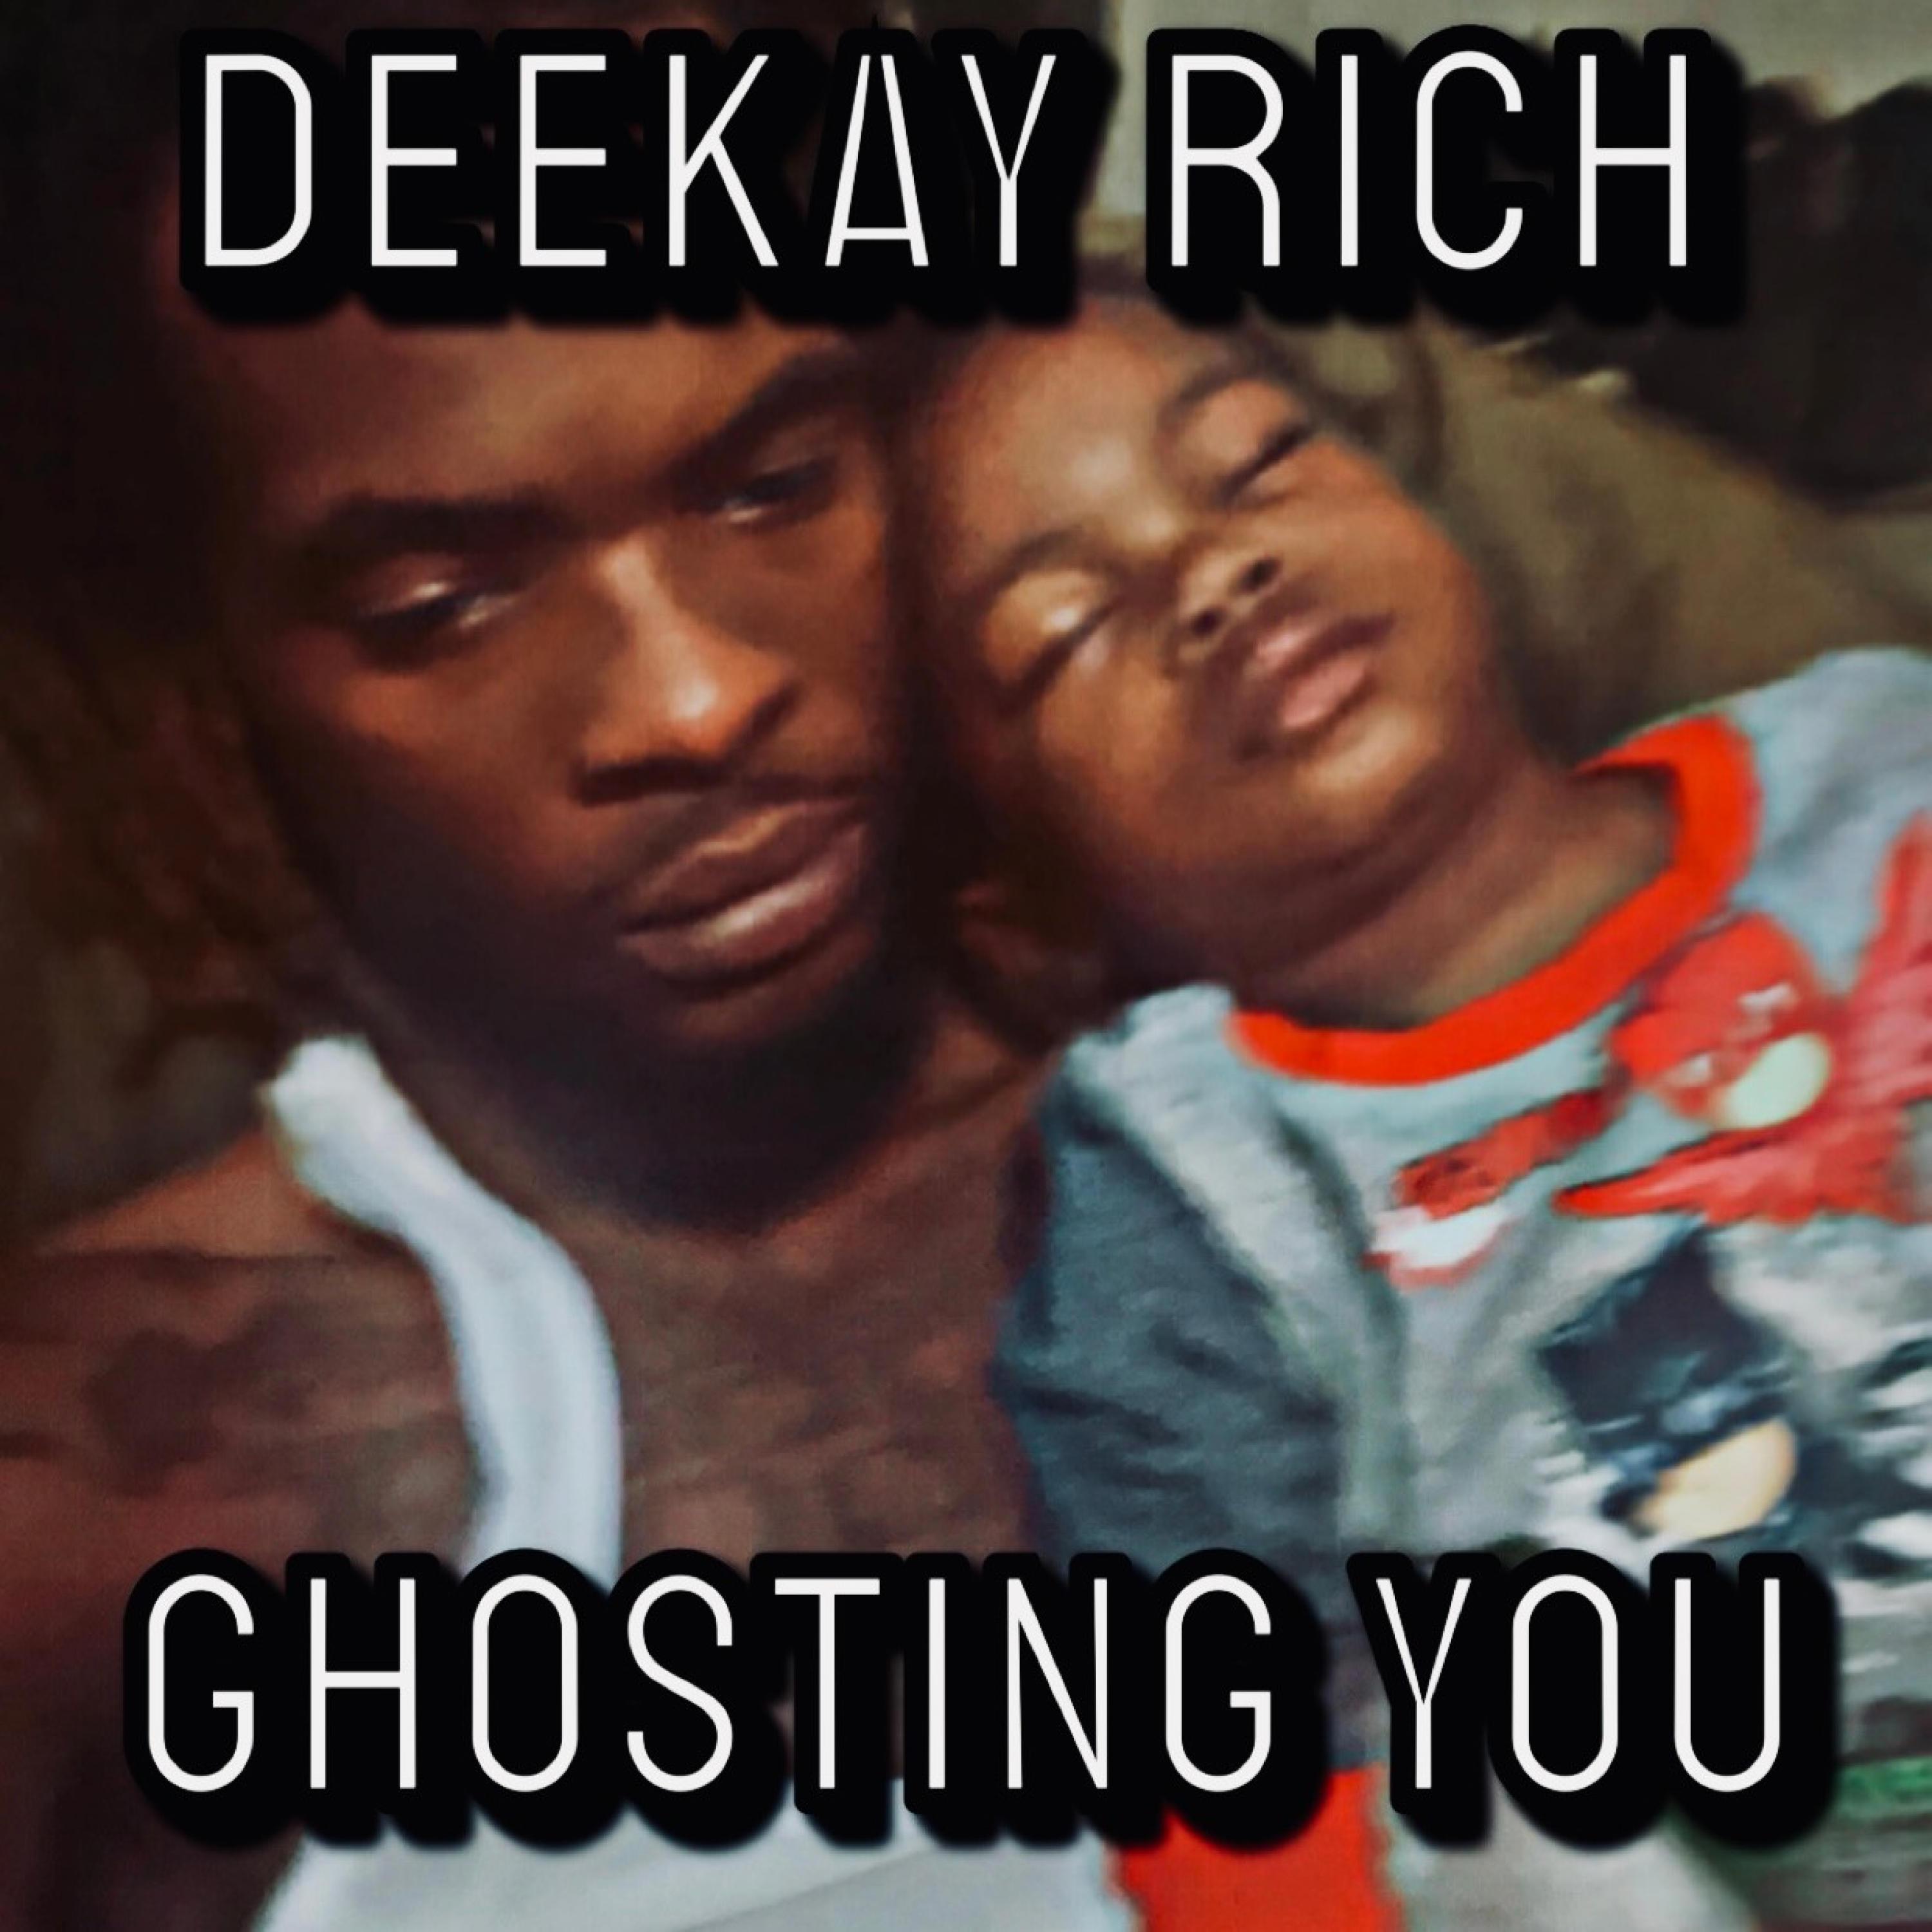 DeeKay Rich - Ghosting You